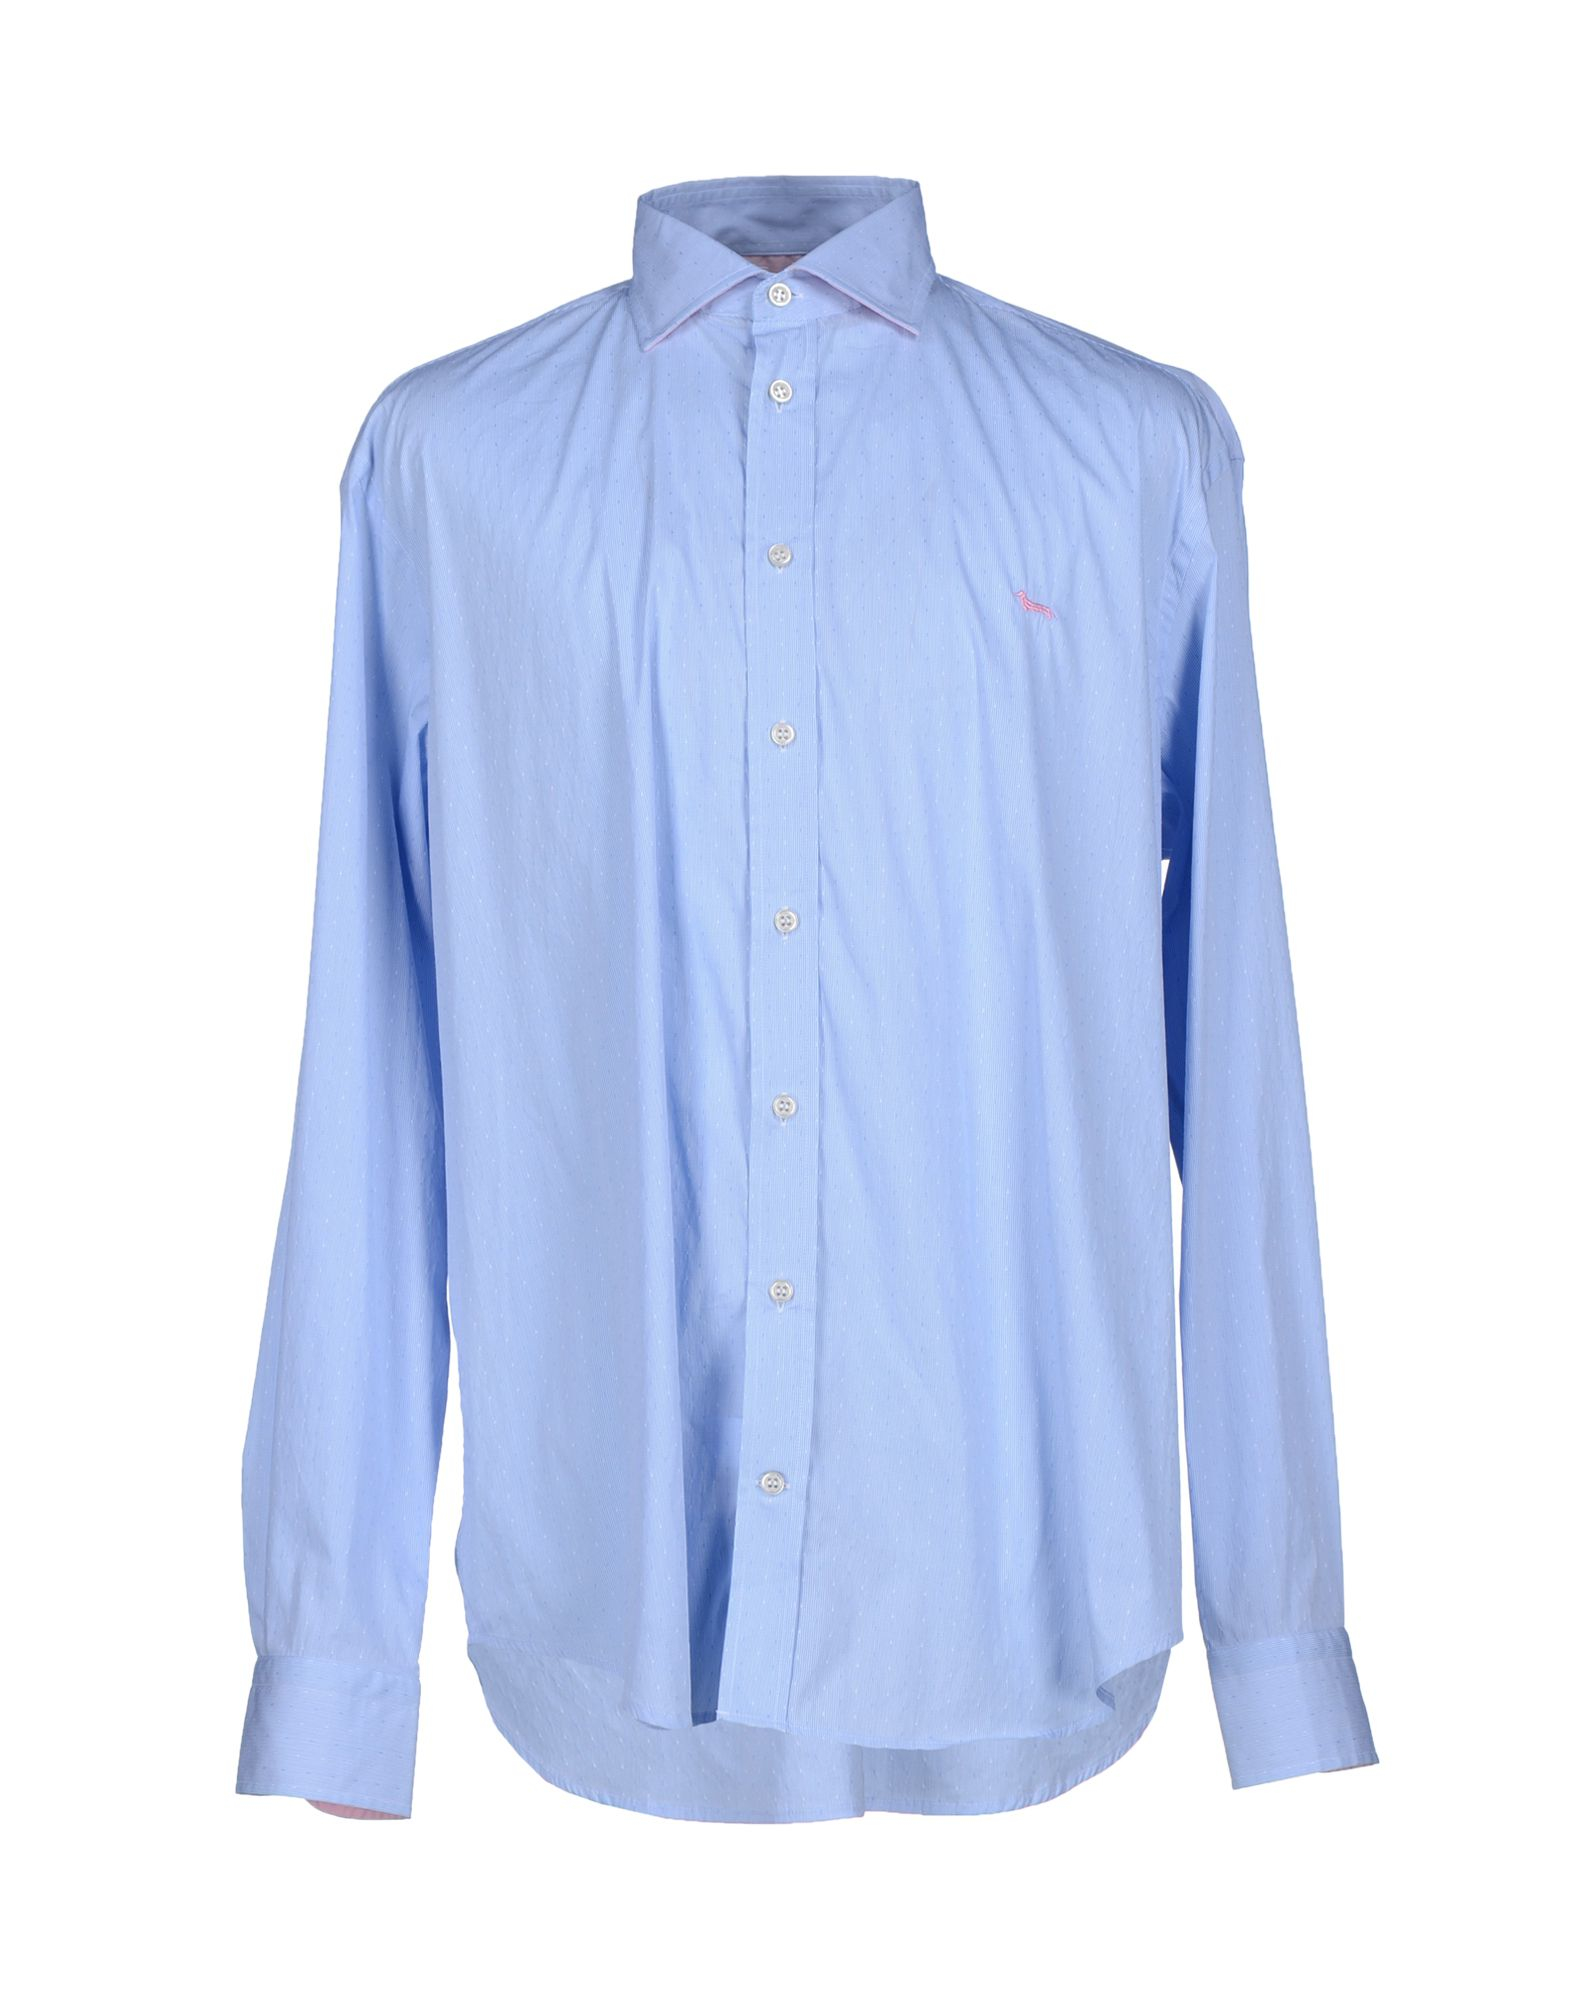 Lyst - Harmont & Blaine Shirt in Blue for Men